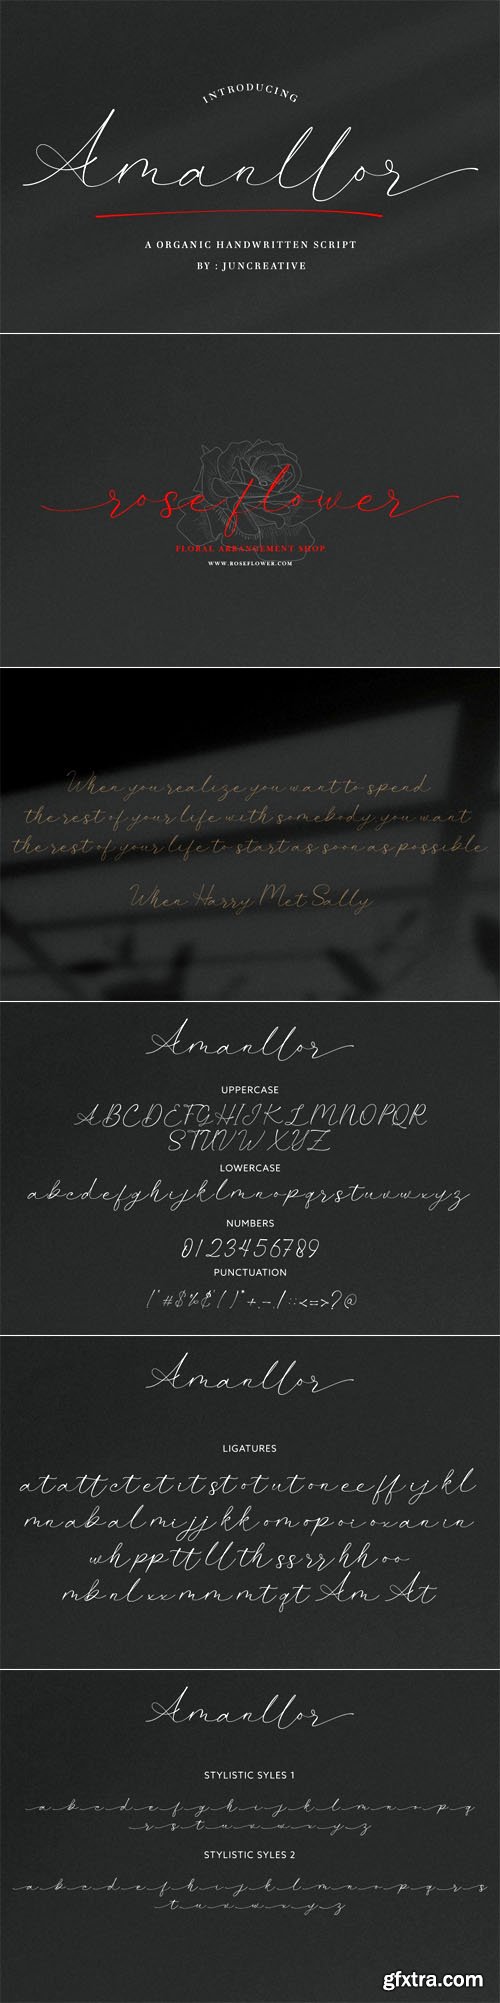 Amanllor - Organic Handwritten Script Font